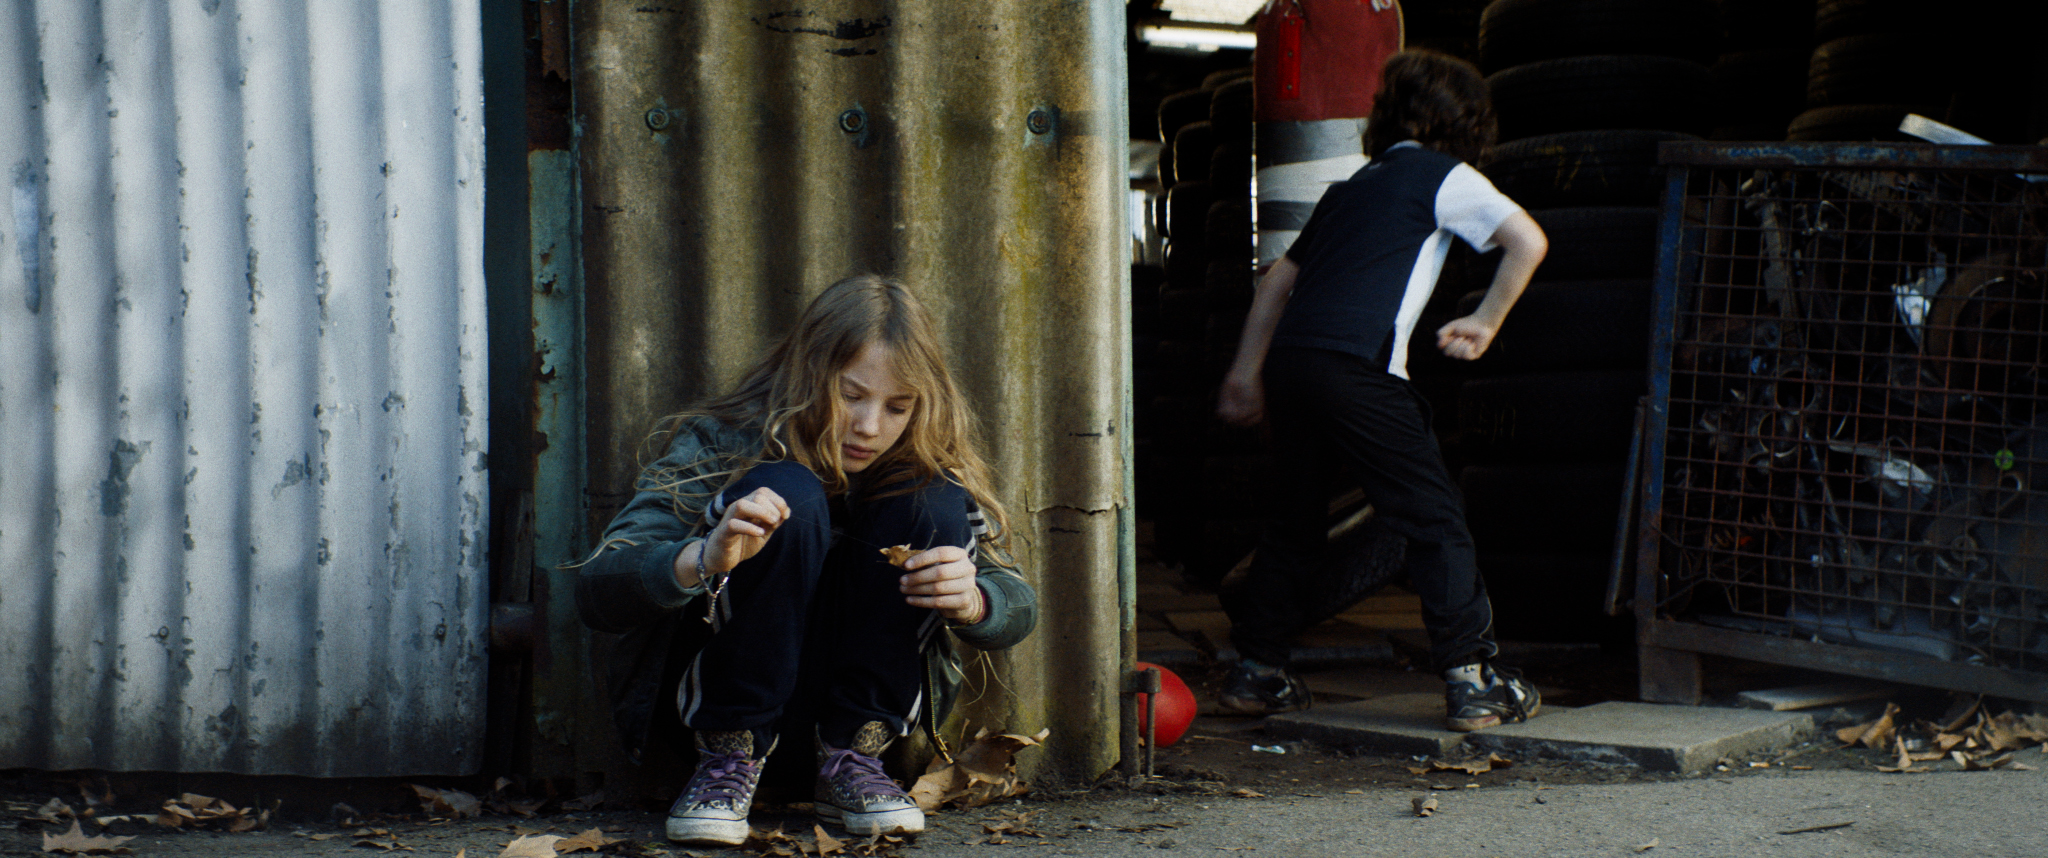 Filmstill aus "Kids Run": Ein Kind mit langem, wallendem Haar hockt am Boden vor einer Wellblechwand. An seiner Hand deutet sich eine baumelnde Handschelle an. Im Hintergrund spielt ein anderes Kind.